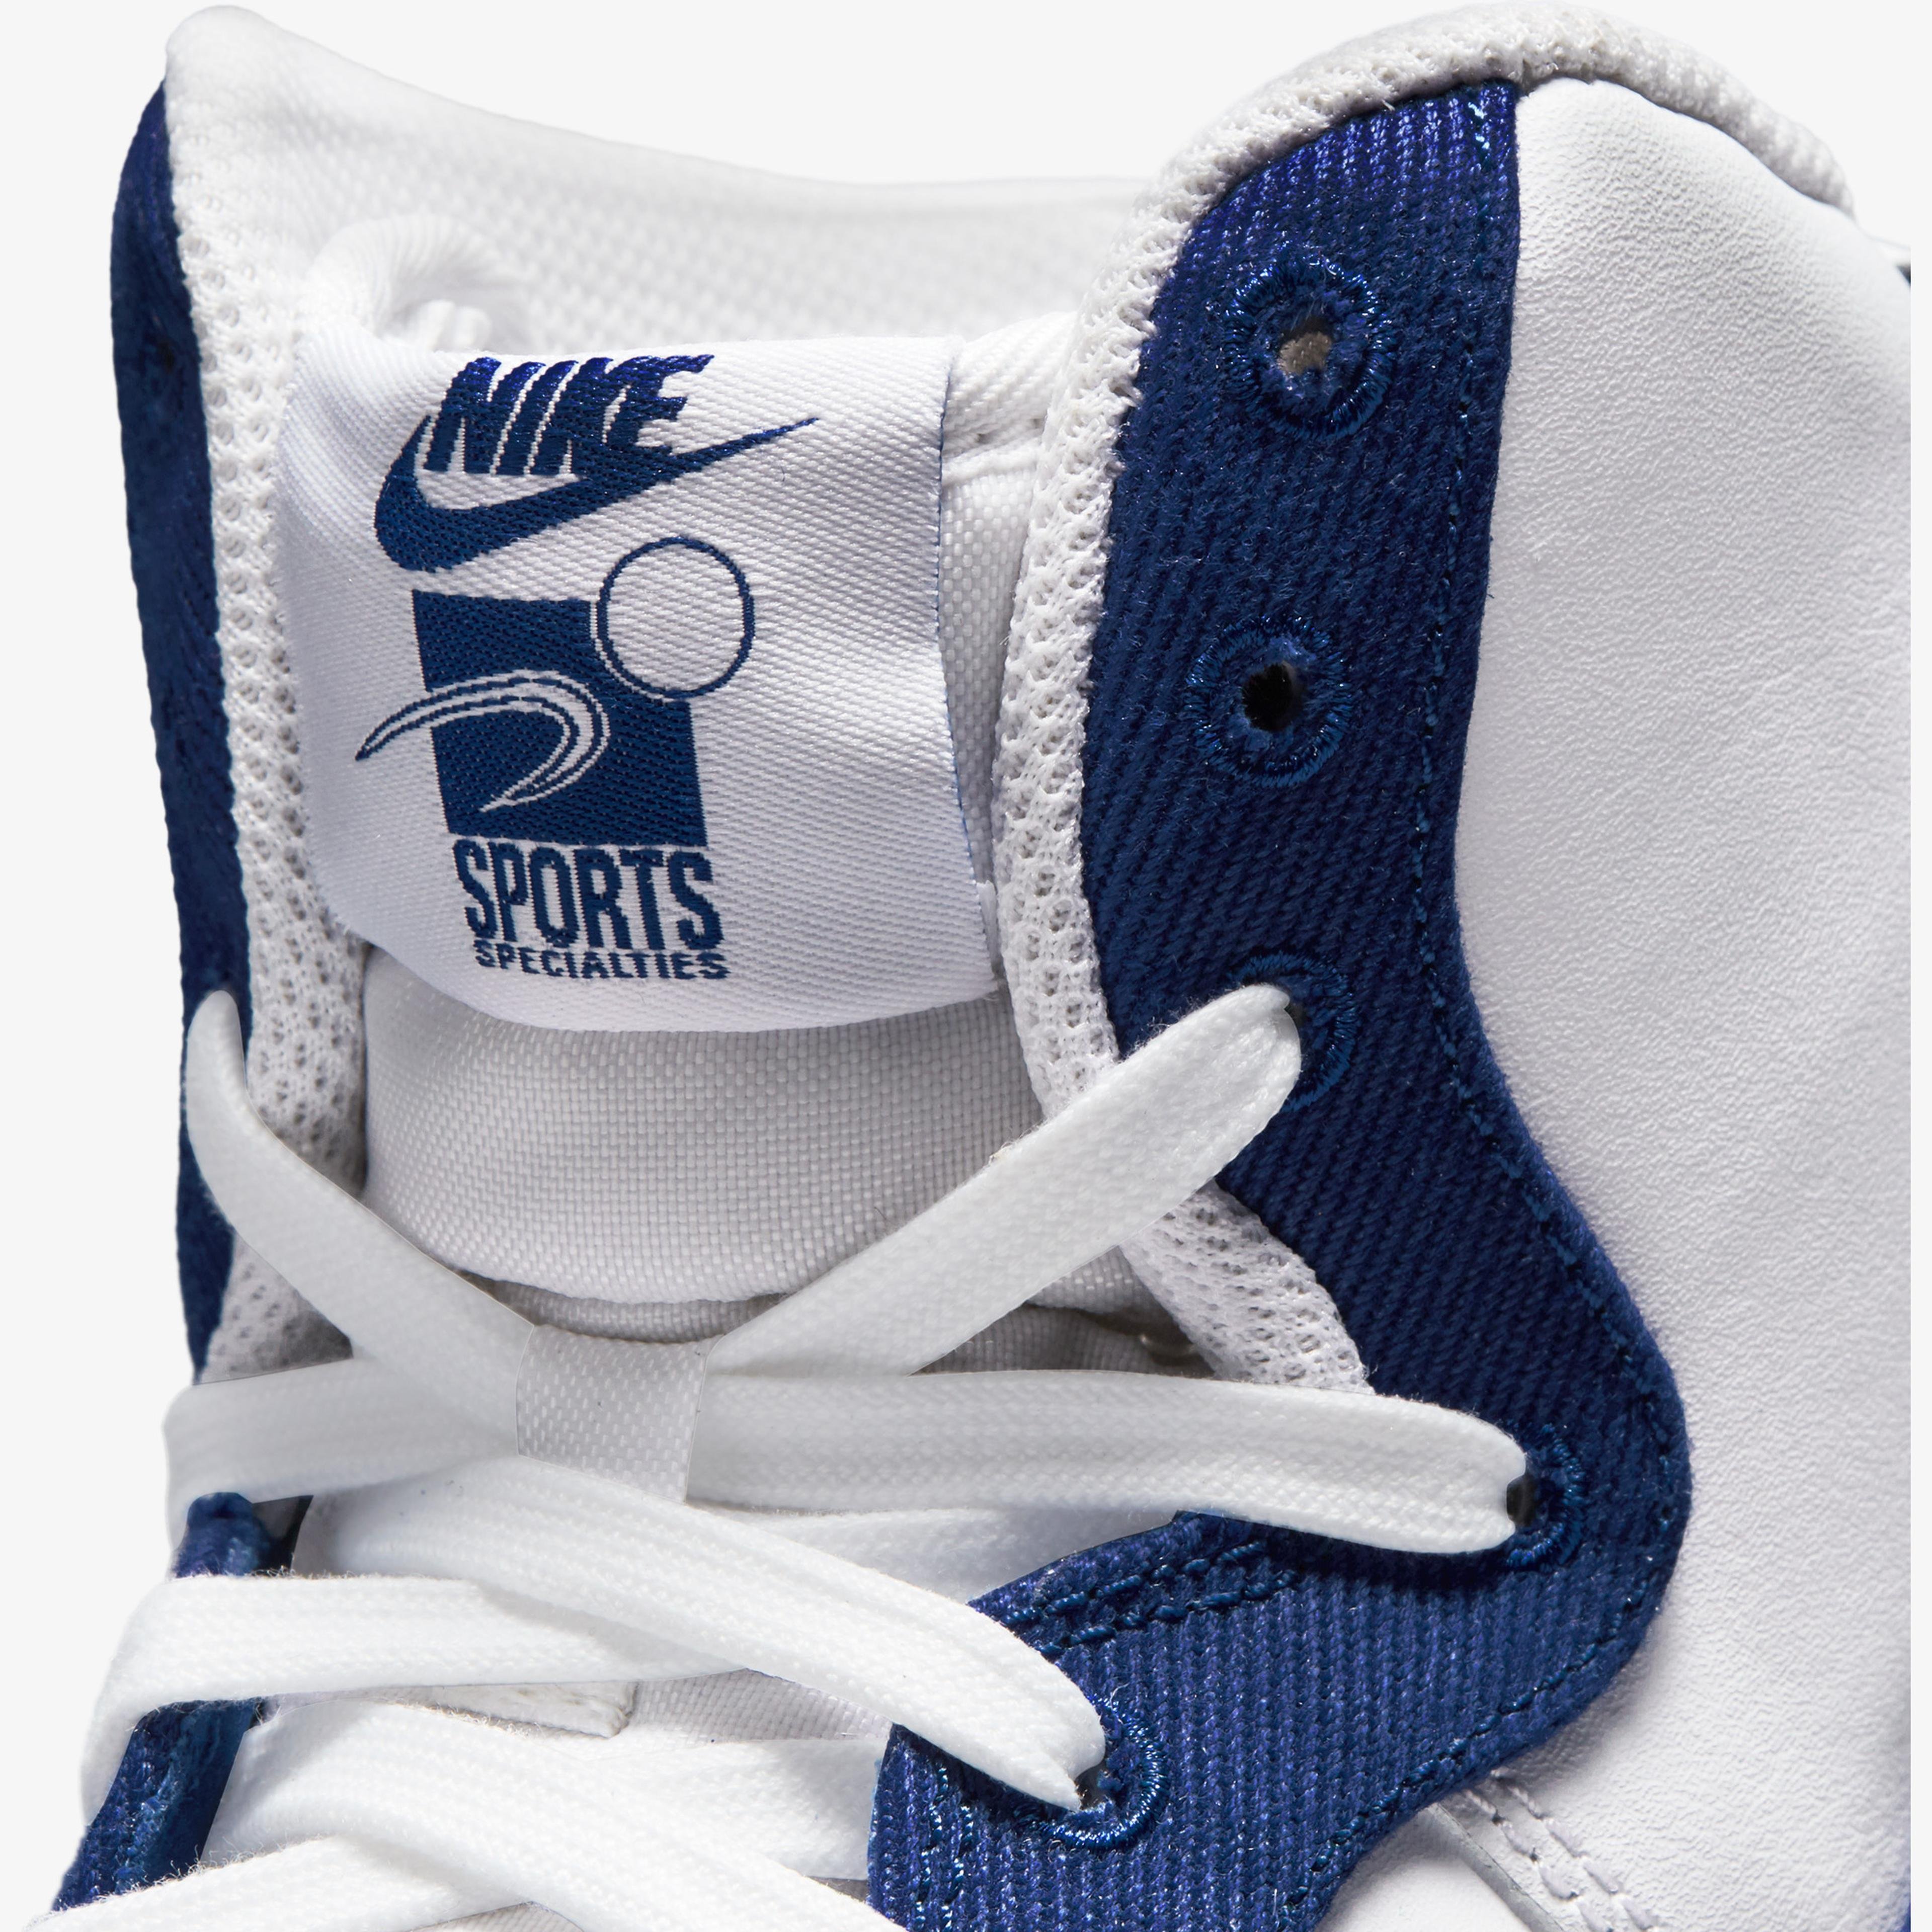 Nike Air Force 1 High '07 EMB Dodgers Erkek Beyaz Spor Ayakkabı